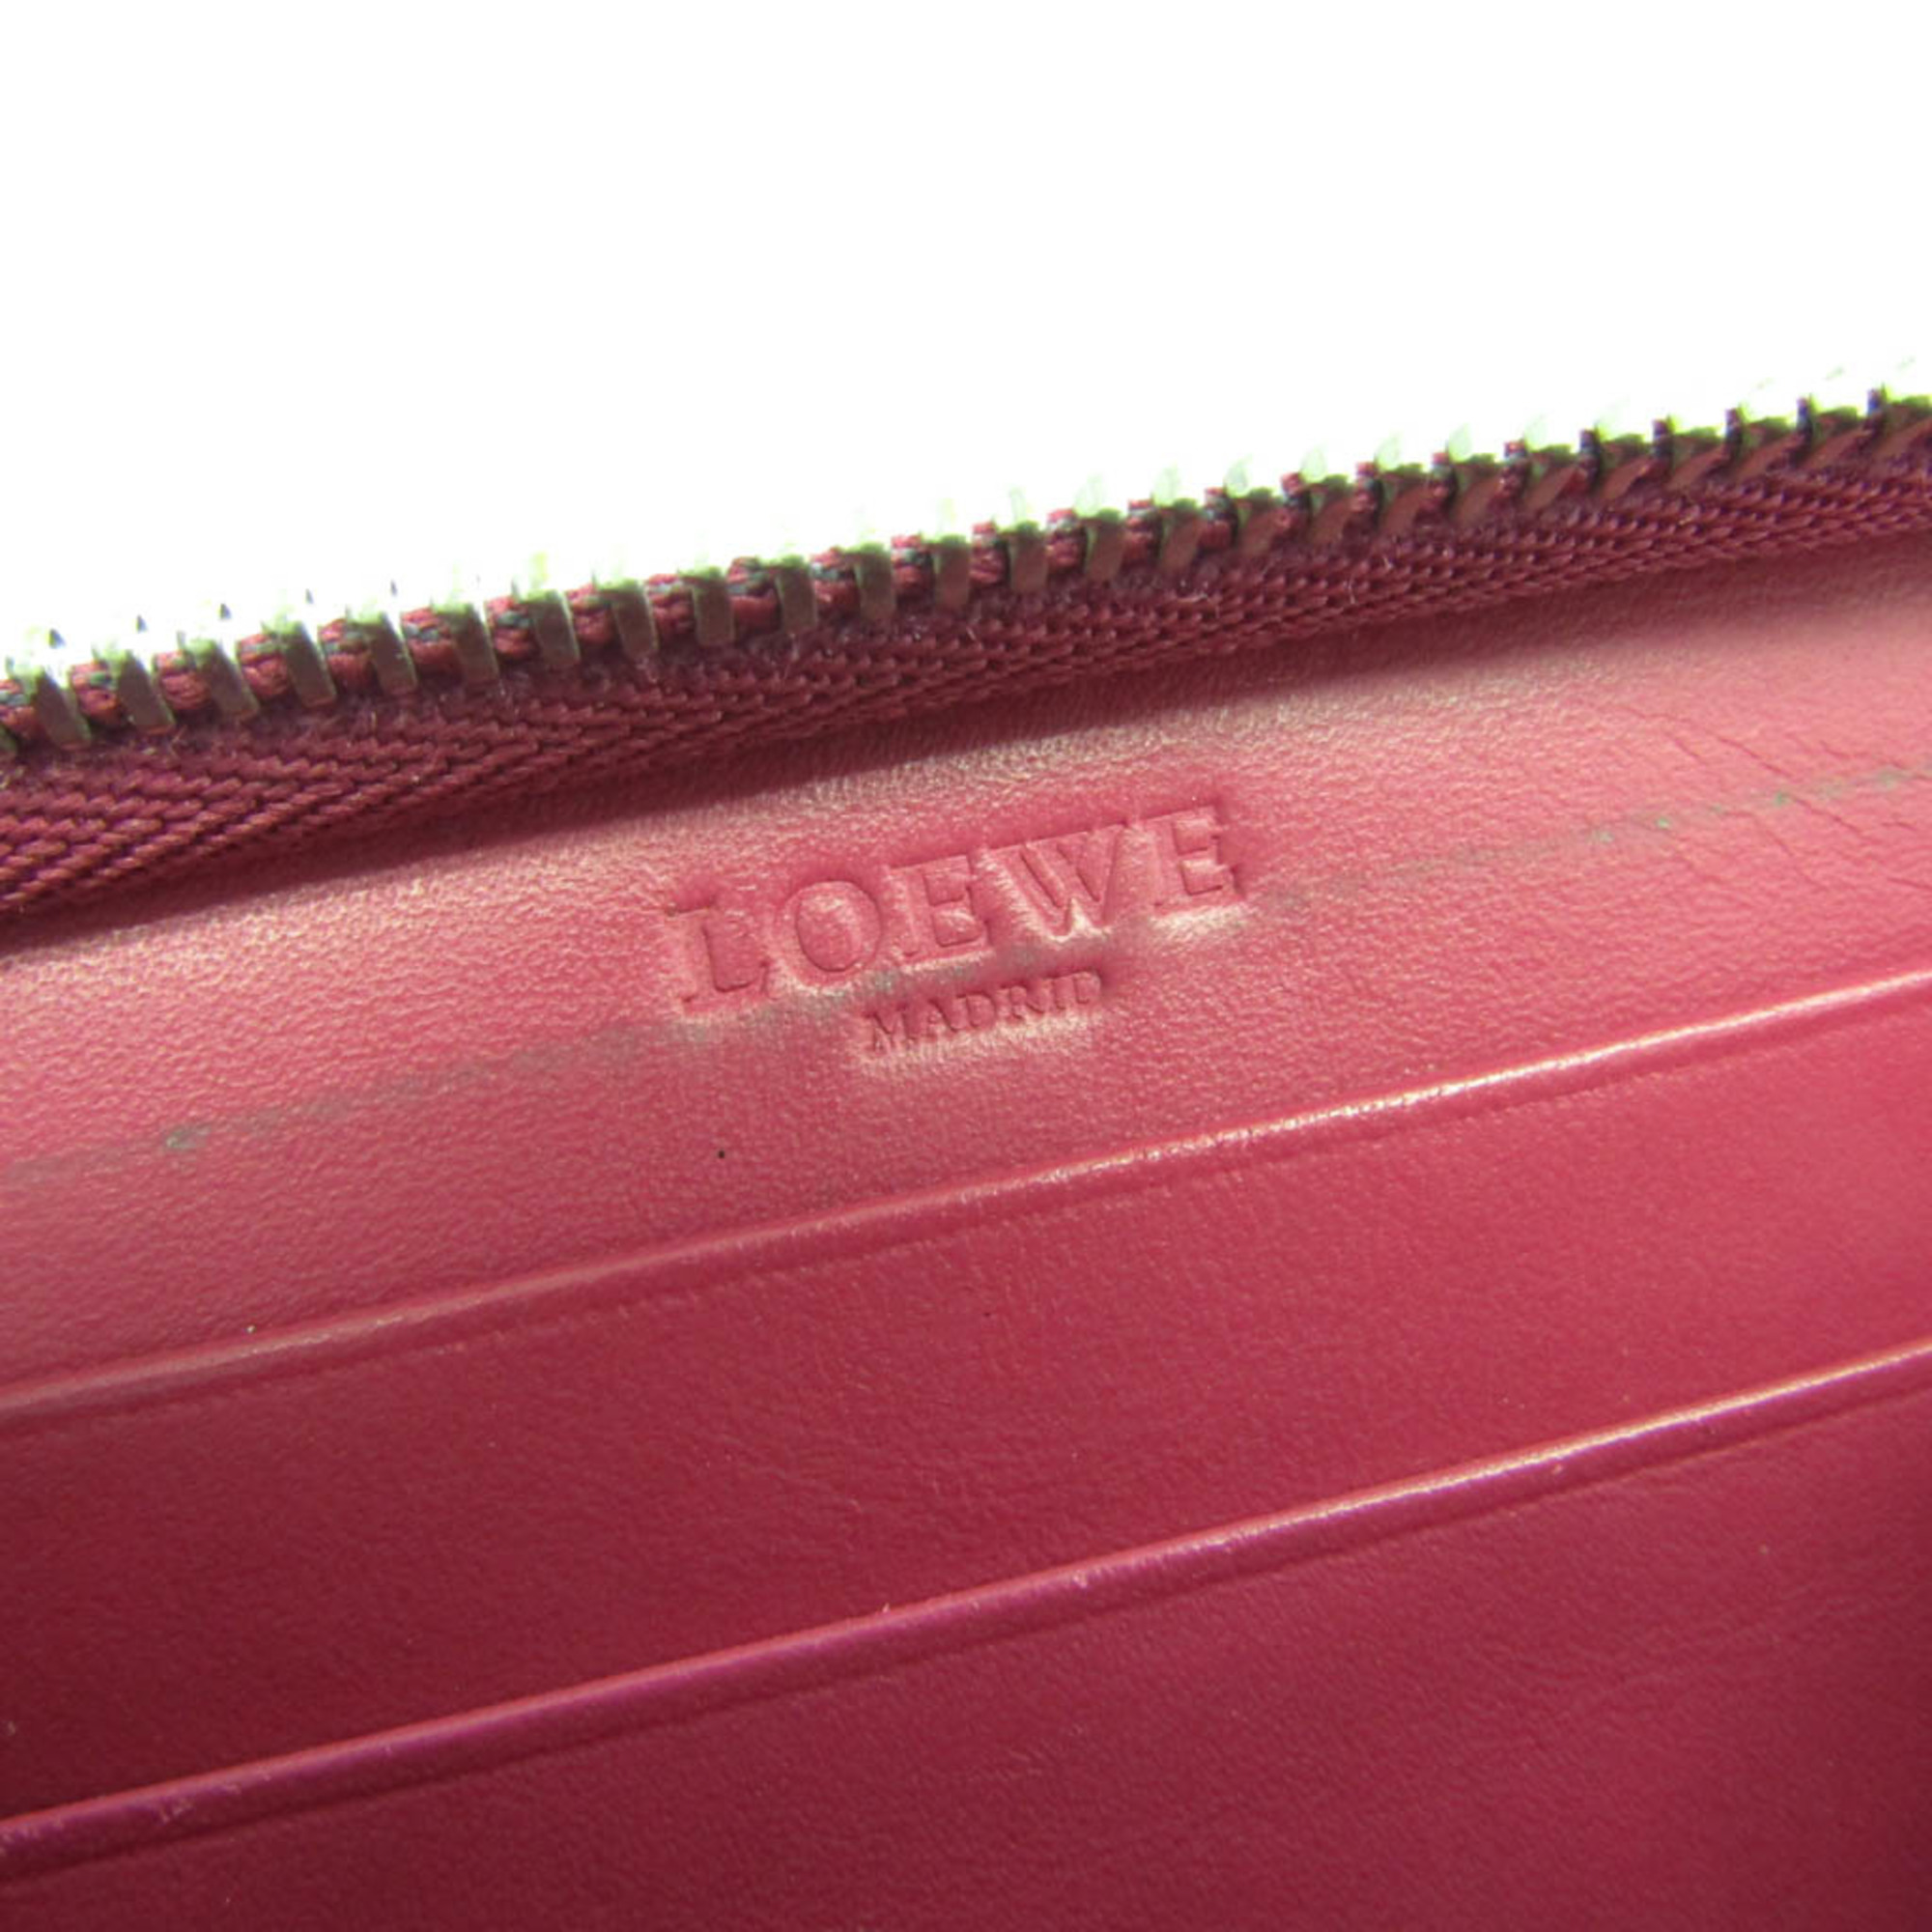 ロエベ(Loewe) アナグラム カードケース レディース レザー 小銭入れ 